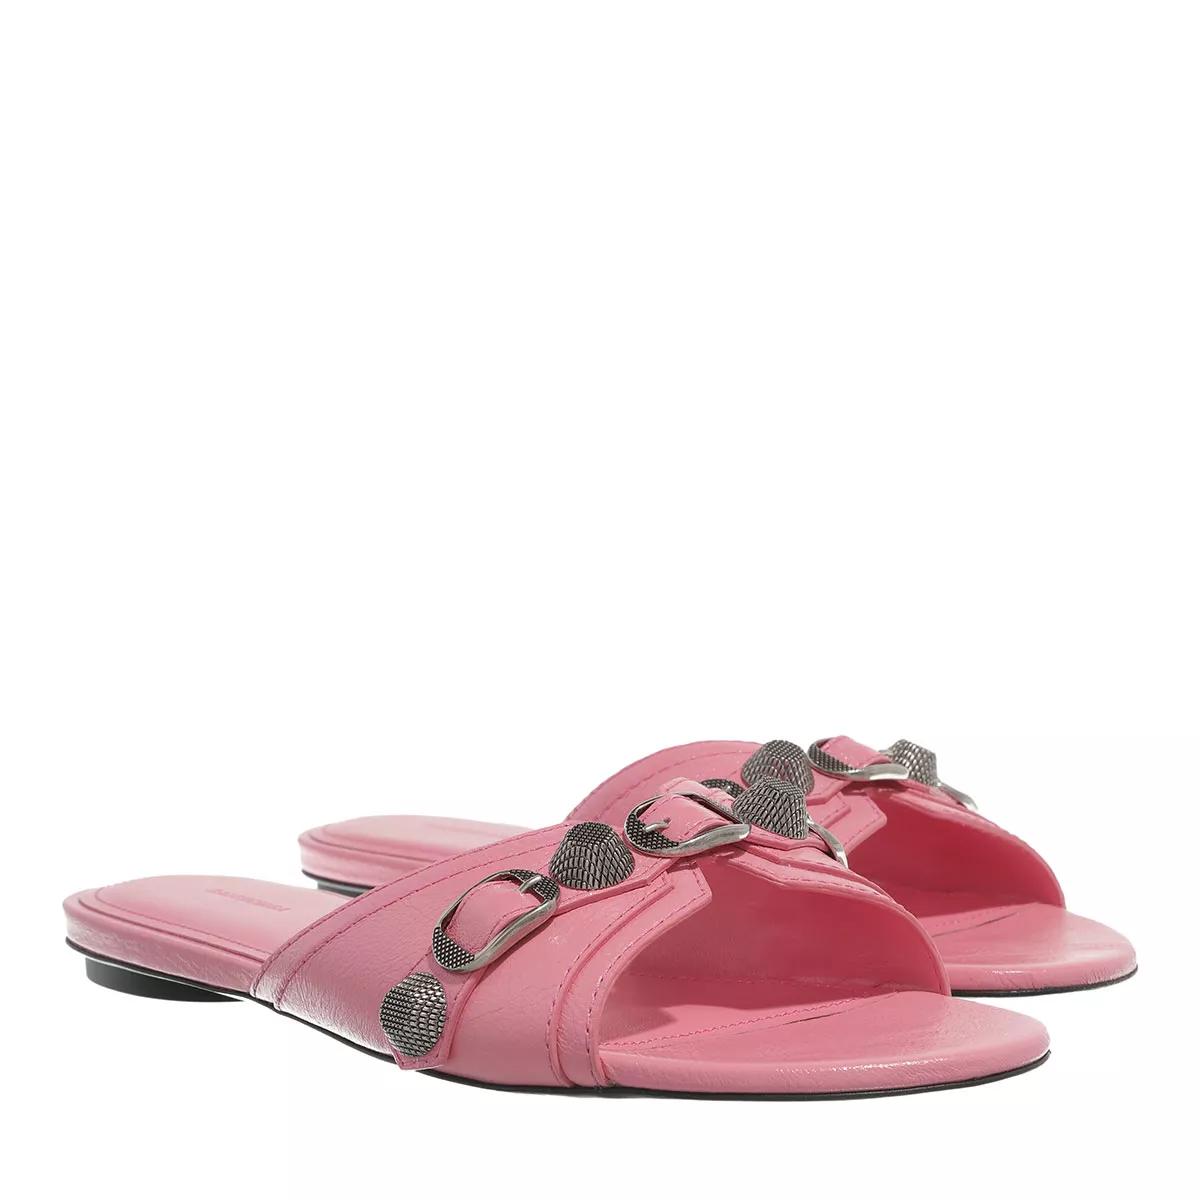 Balenciaga Sandalen - Cagole Sandals - Gr. 37 (EU) - in Rosa - für Damen von Balenciaga